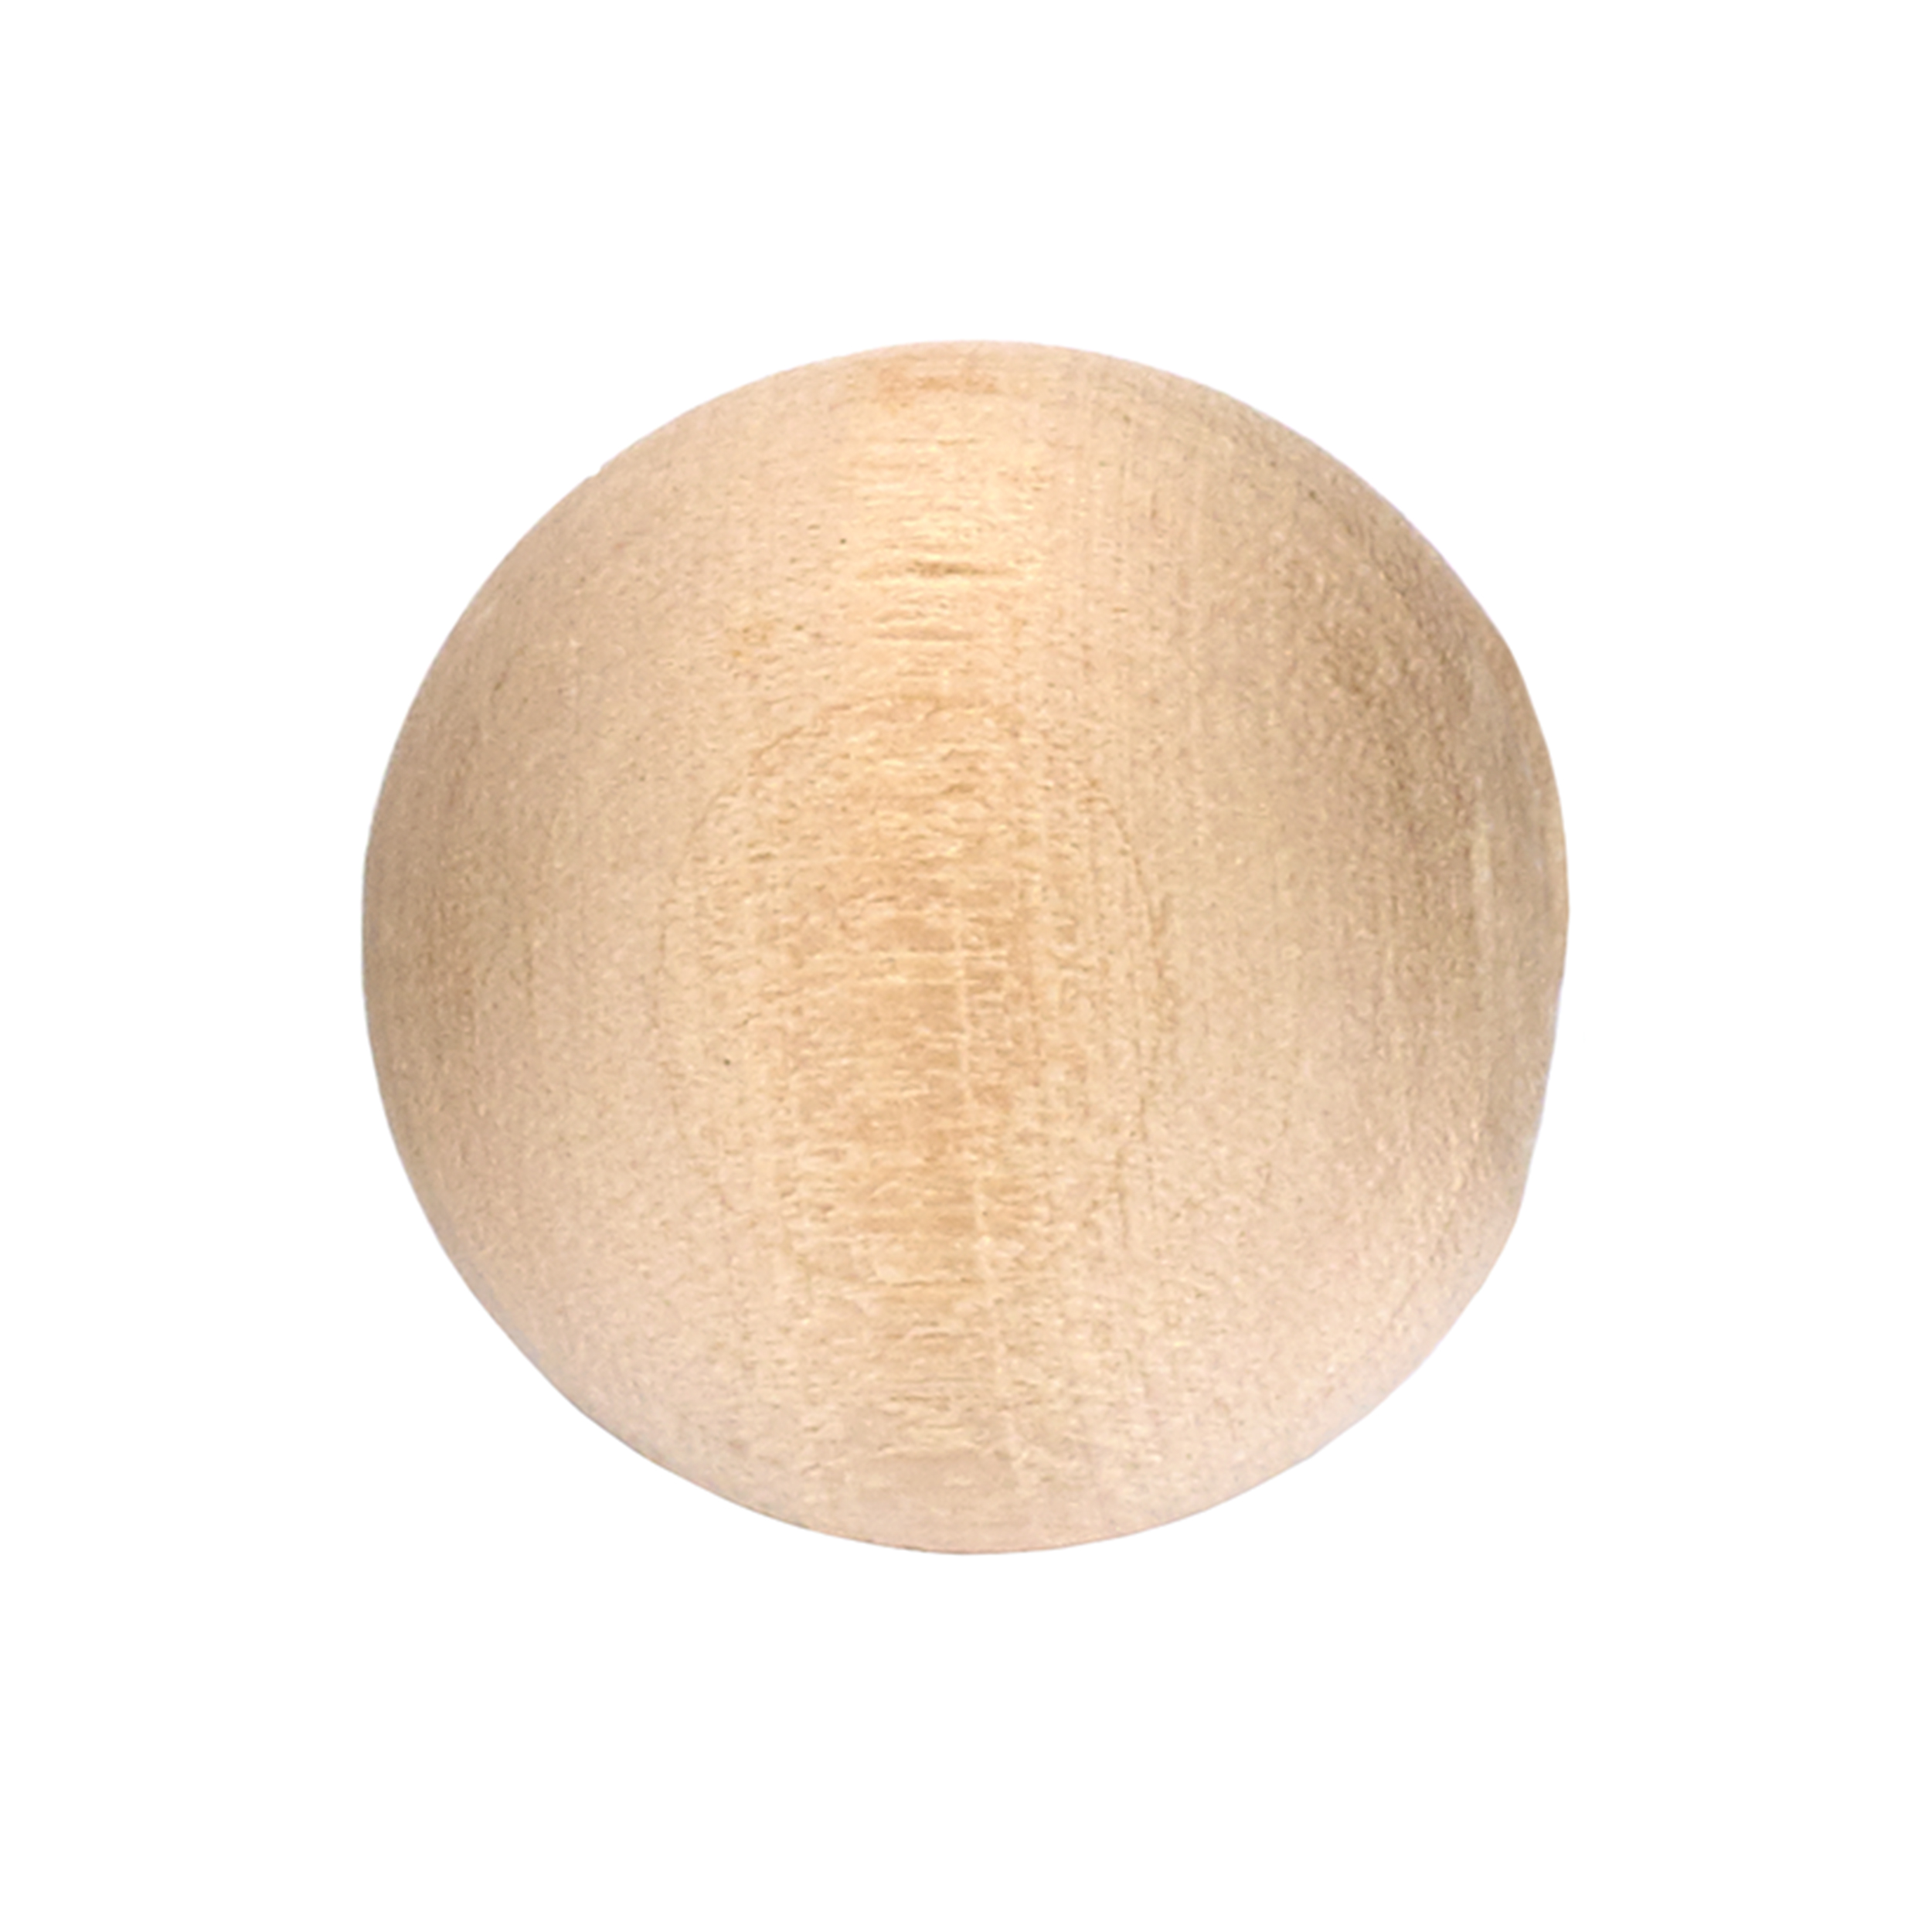 Hardwood Ball 1" Dia., 6-piece